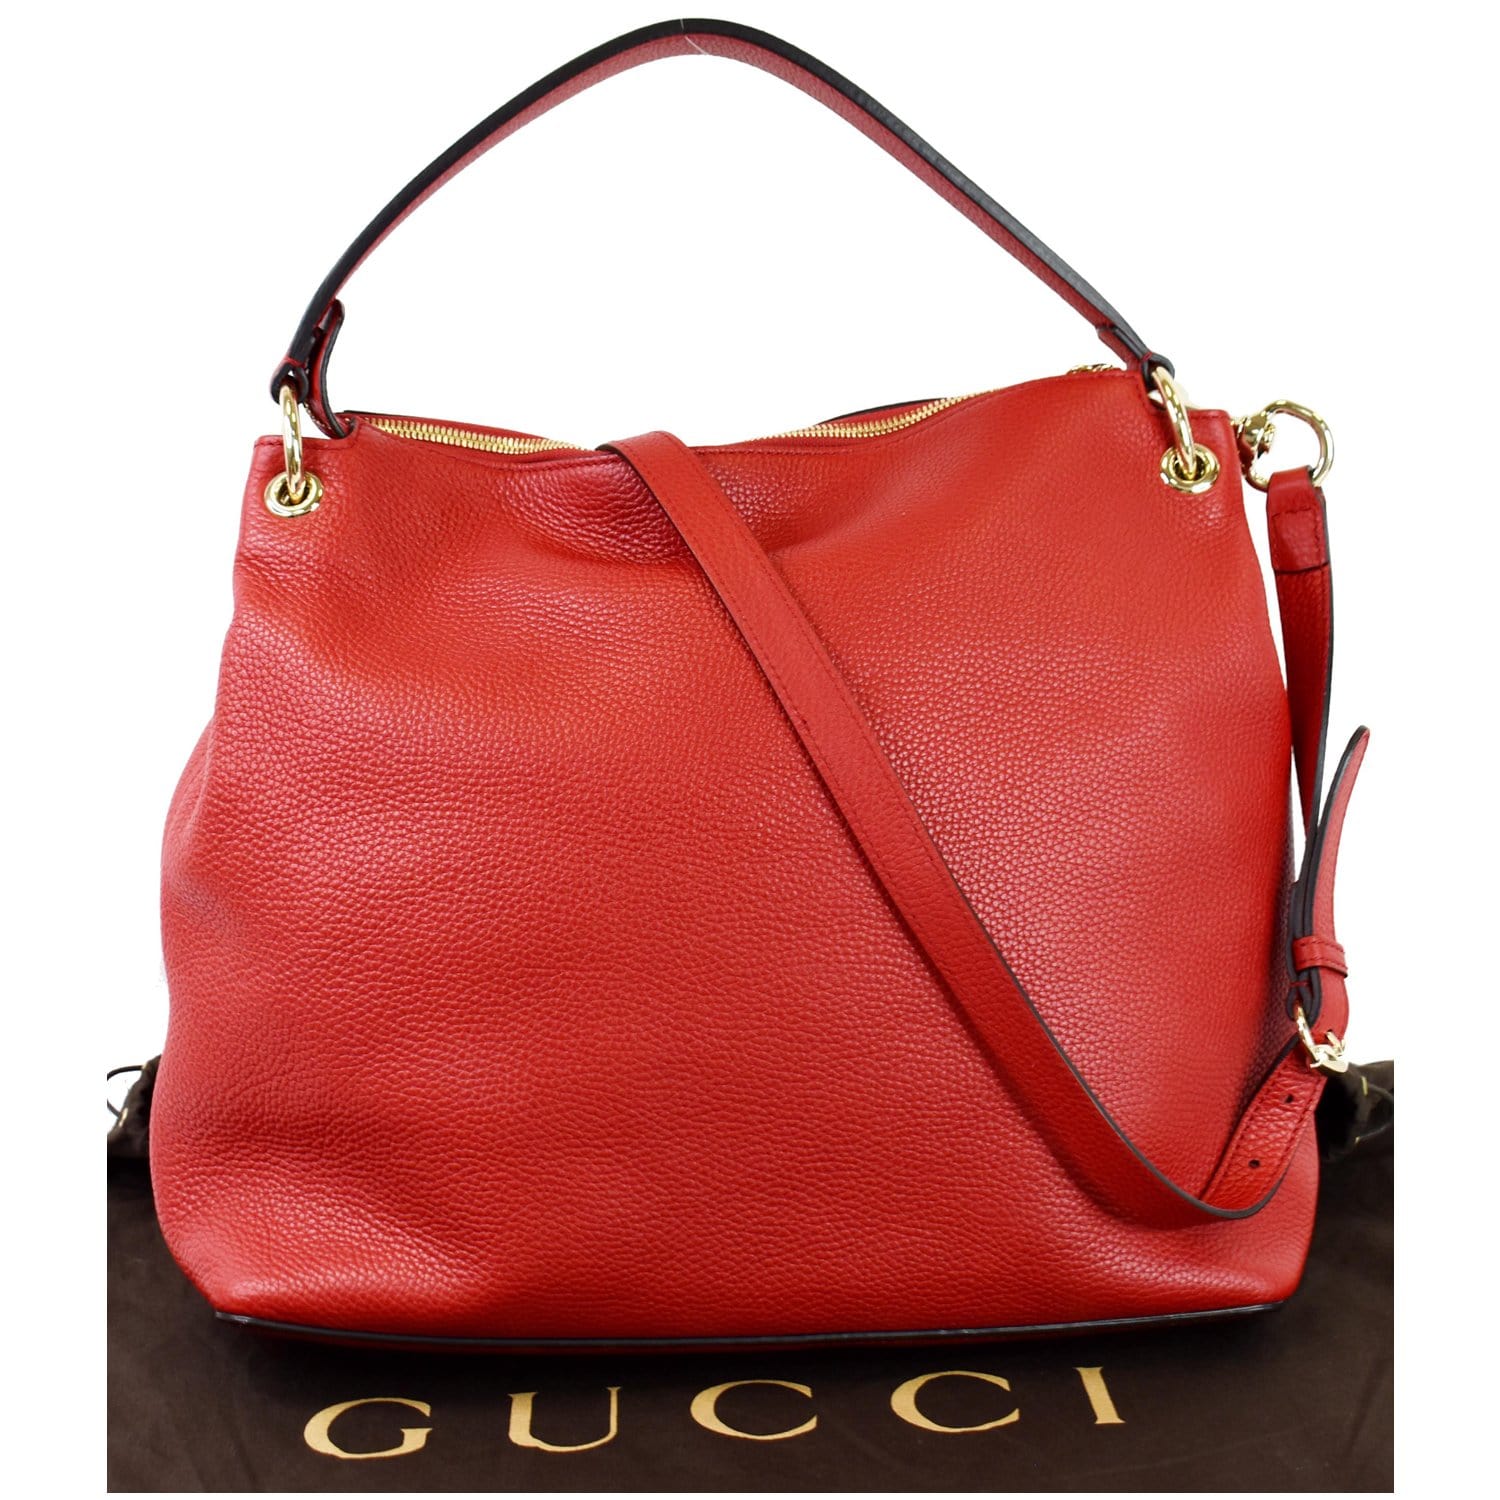 Gucci Soho Large Pebbled Leather Hobo Shoulder Bag Red